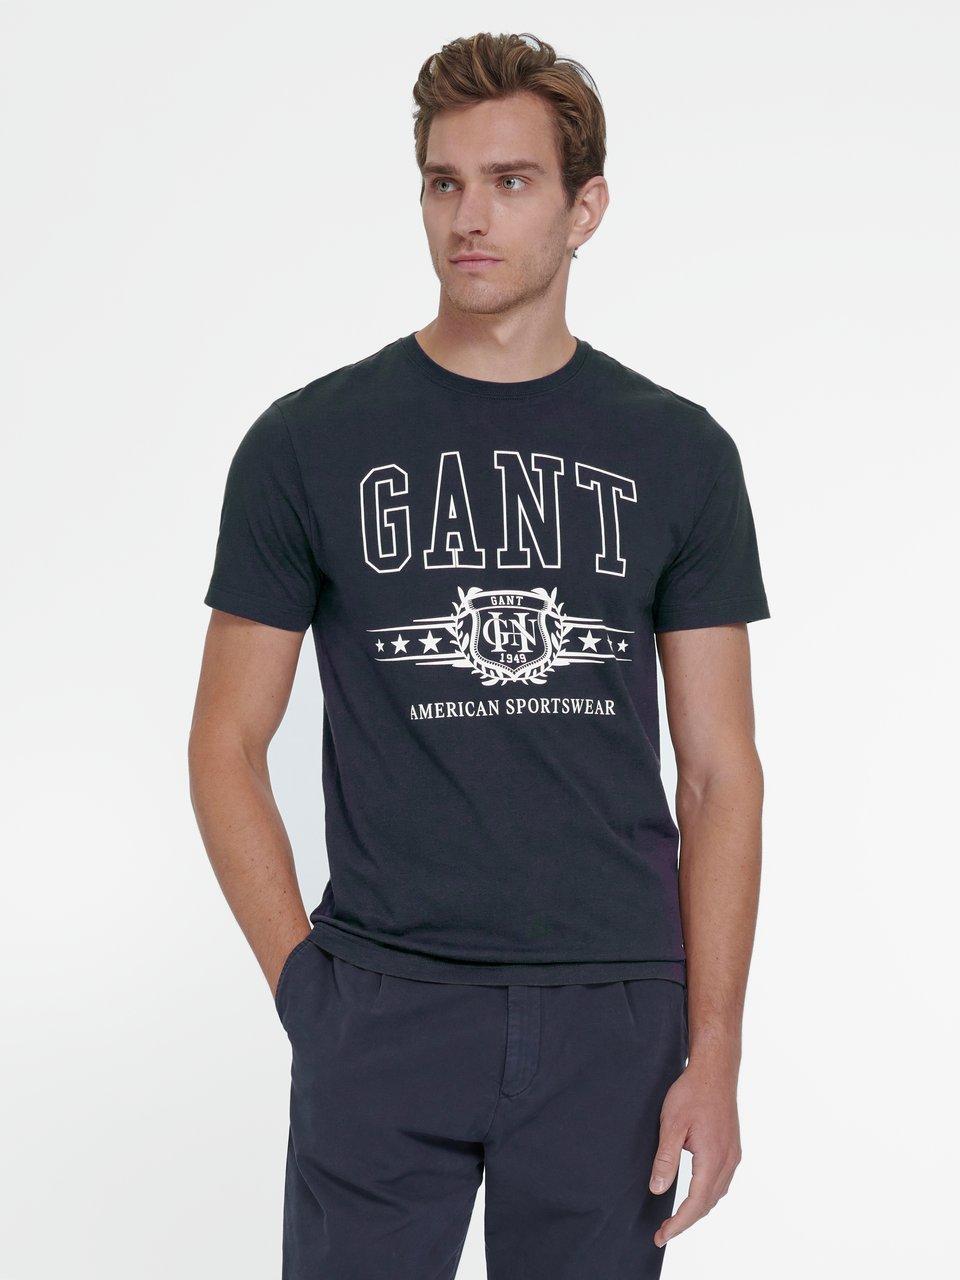 GANT - Le T-shirt